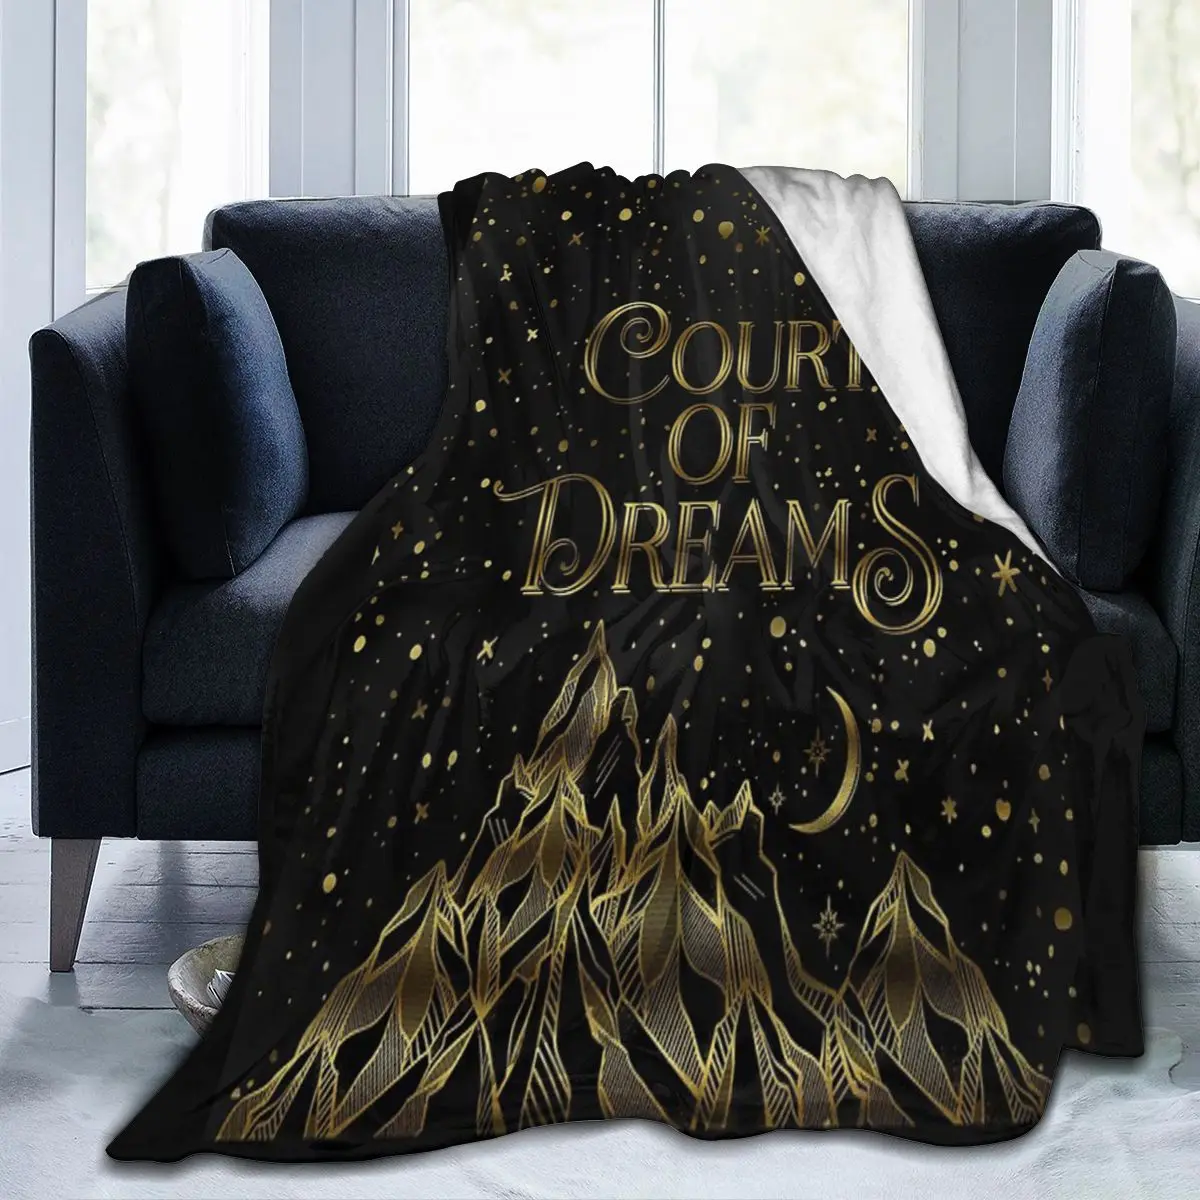 

Одеяло для лица с изображением двора снов ACOMAF, настраиваемое портативное антипиллинговое одеяло разных размеров